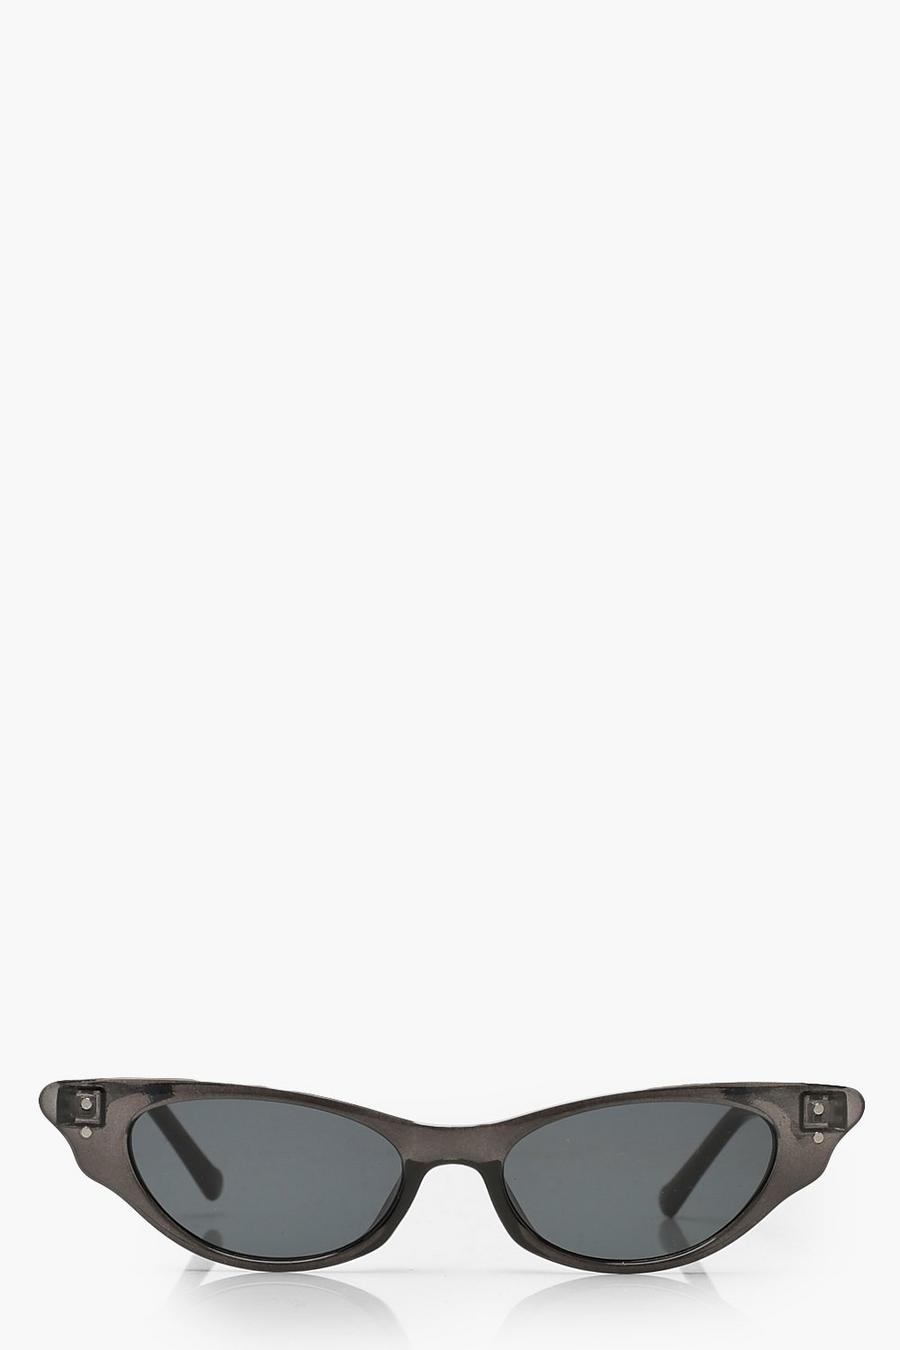 Gafas de sol estilo ojos de gato con montura transparente image number 1